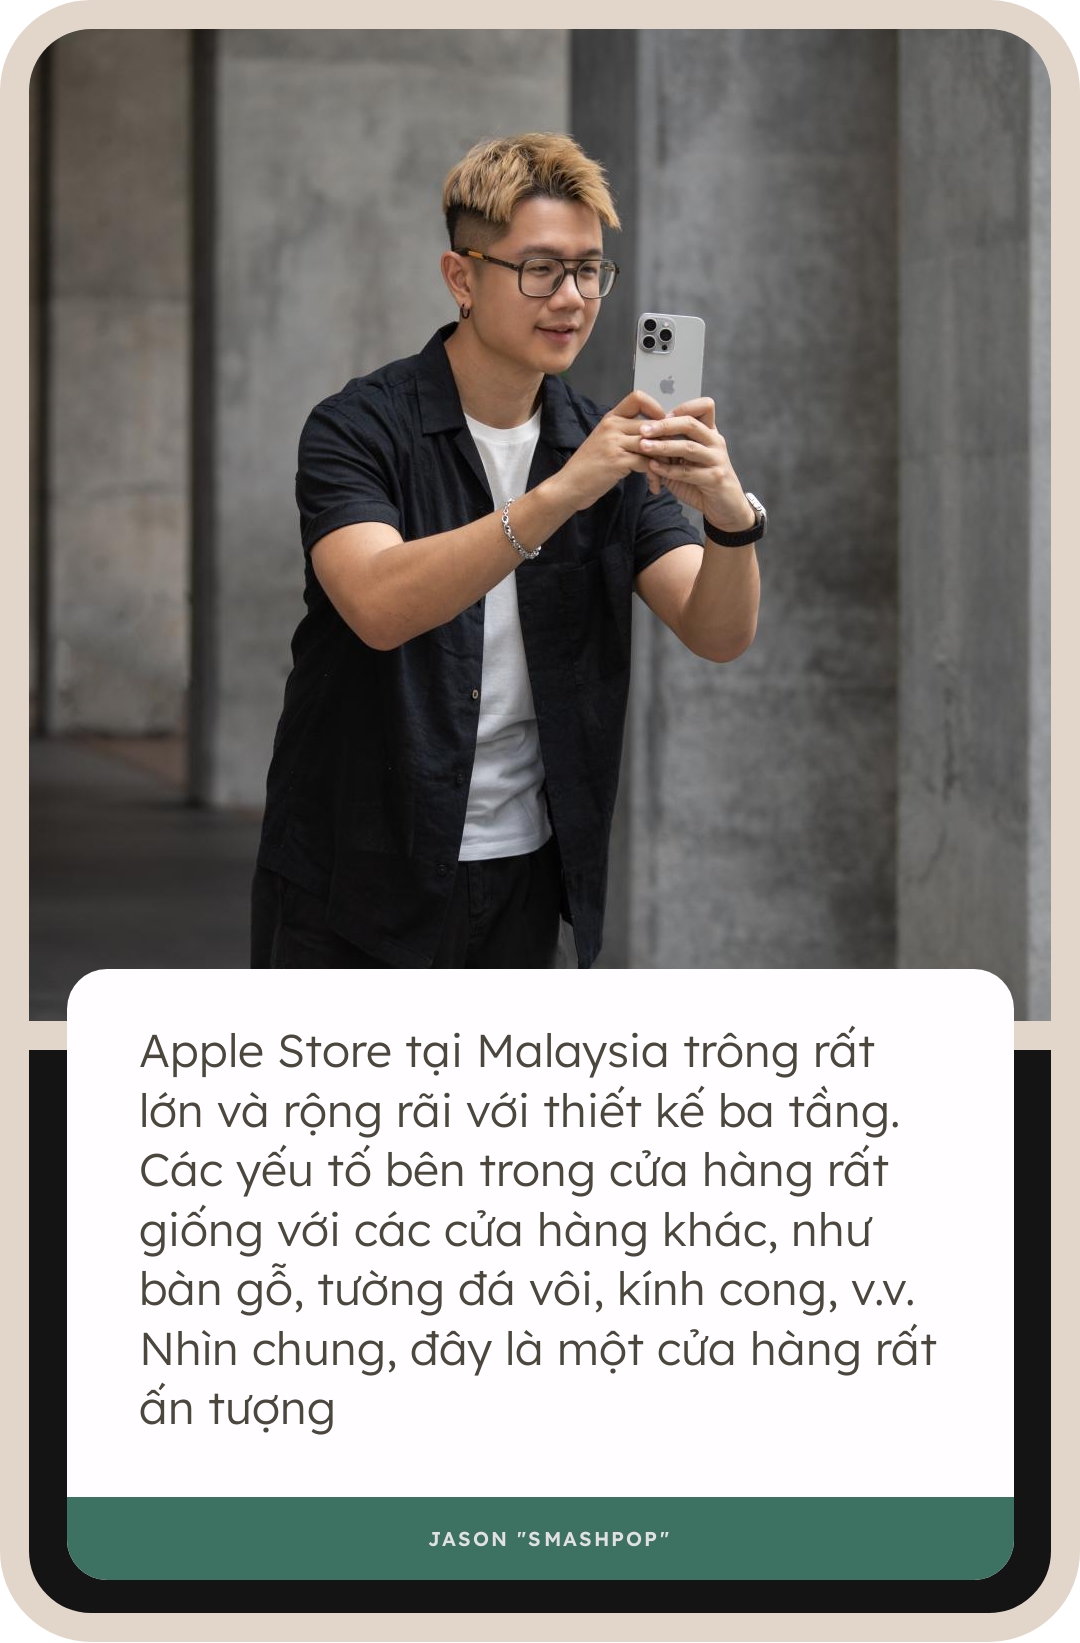 Khai trương Apple Store tại Malaysia: Cửa hàng siêu rộng, người người xếp hàng chờ từ tối hôm trước, khách Việt hào hứng vì sự kiện quá 